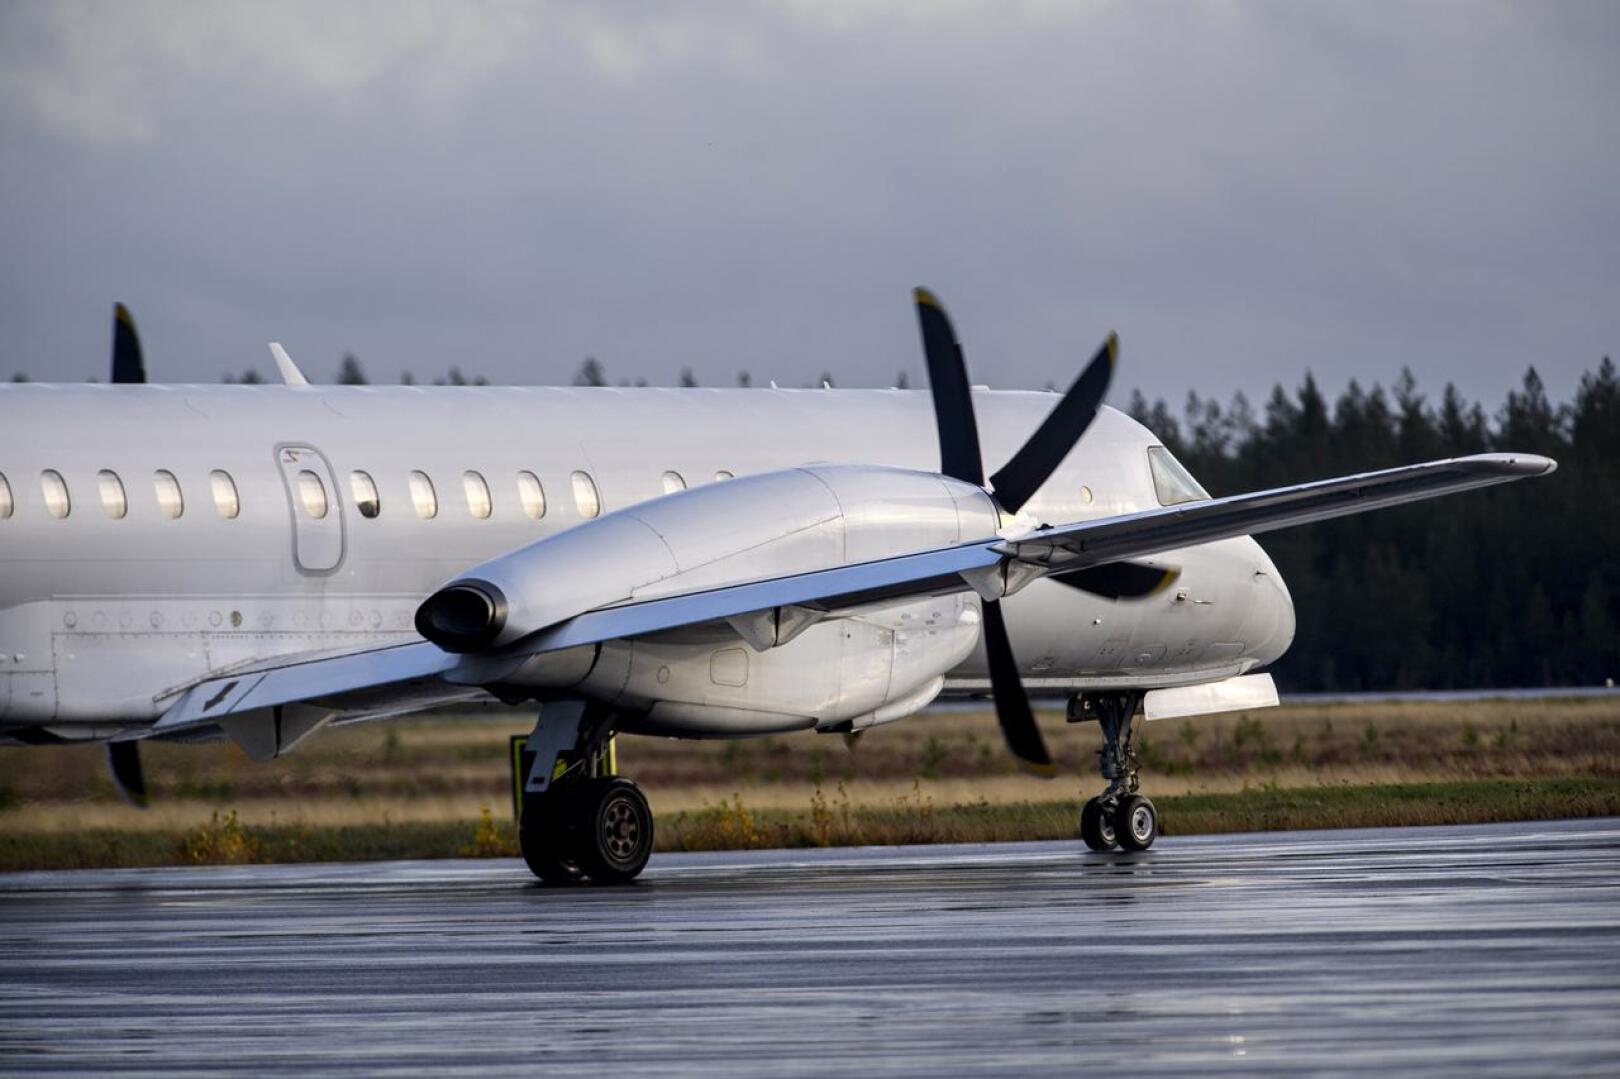 NyxAir lentää Kruunupyyn ja Helsingin välillä Saab 2000 -koneella, jossa on paikkoja 50 matkustajalle.